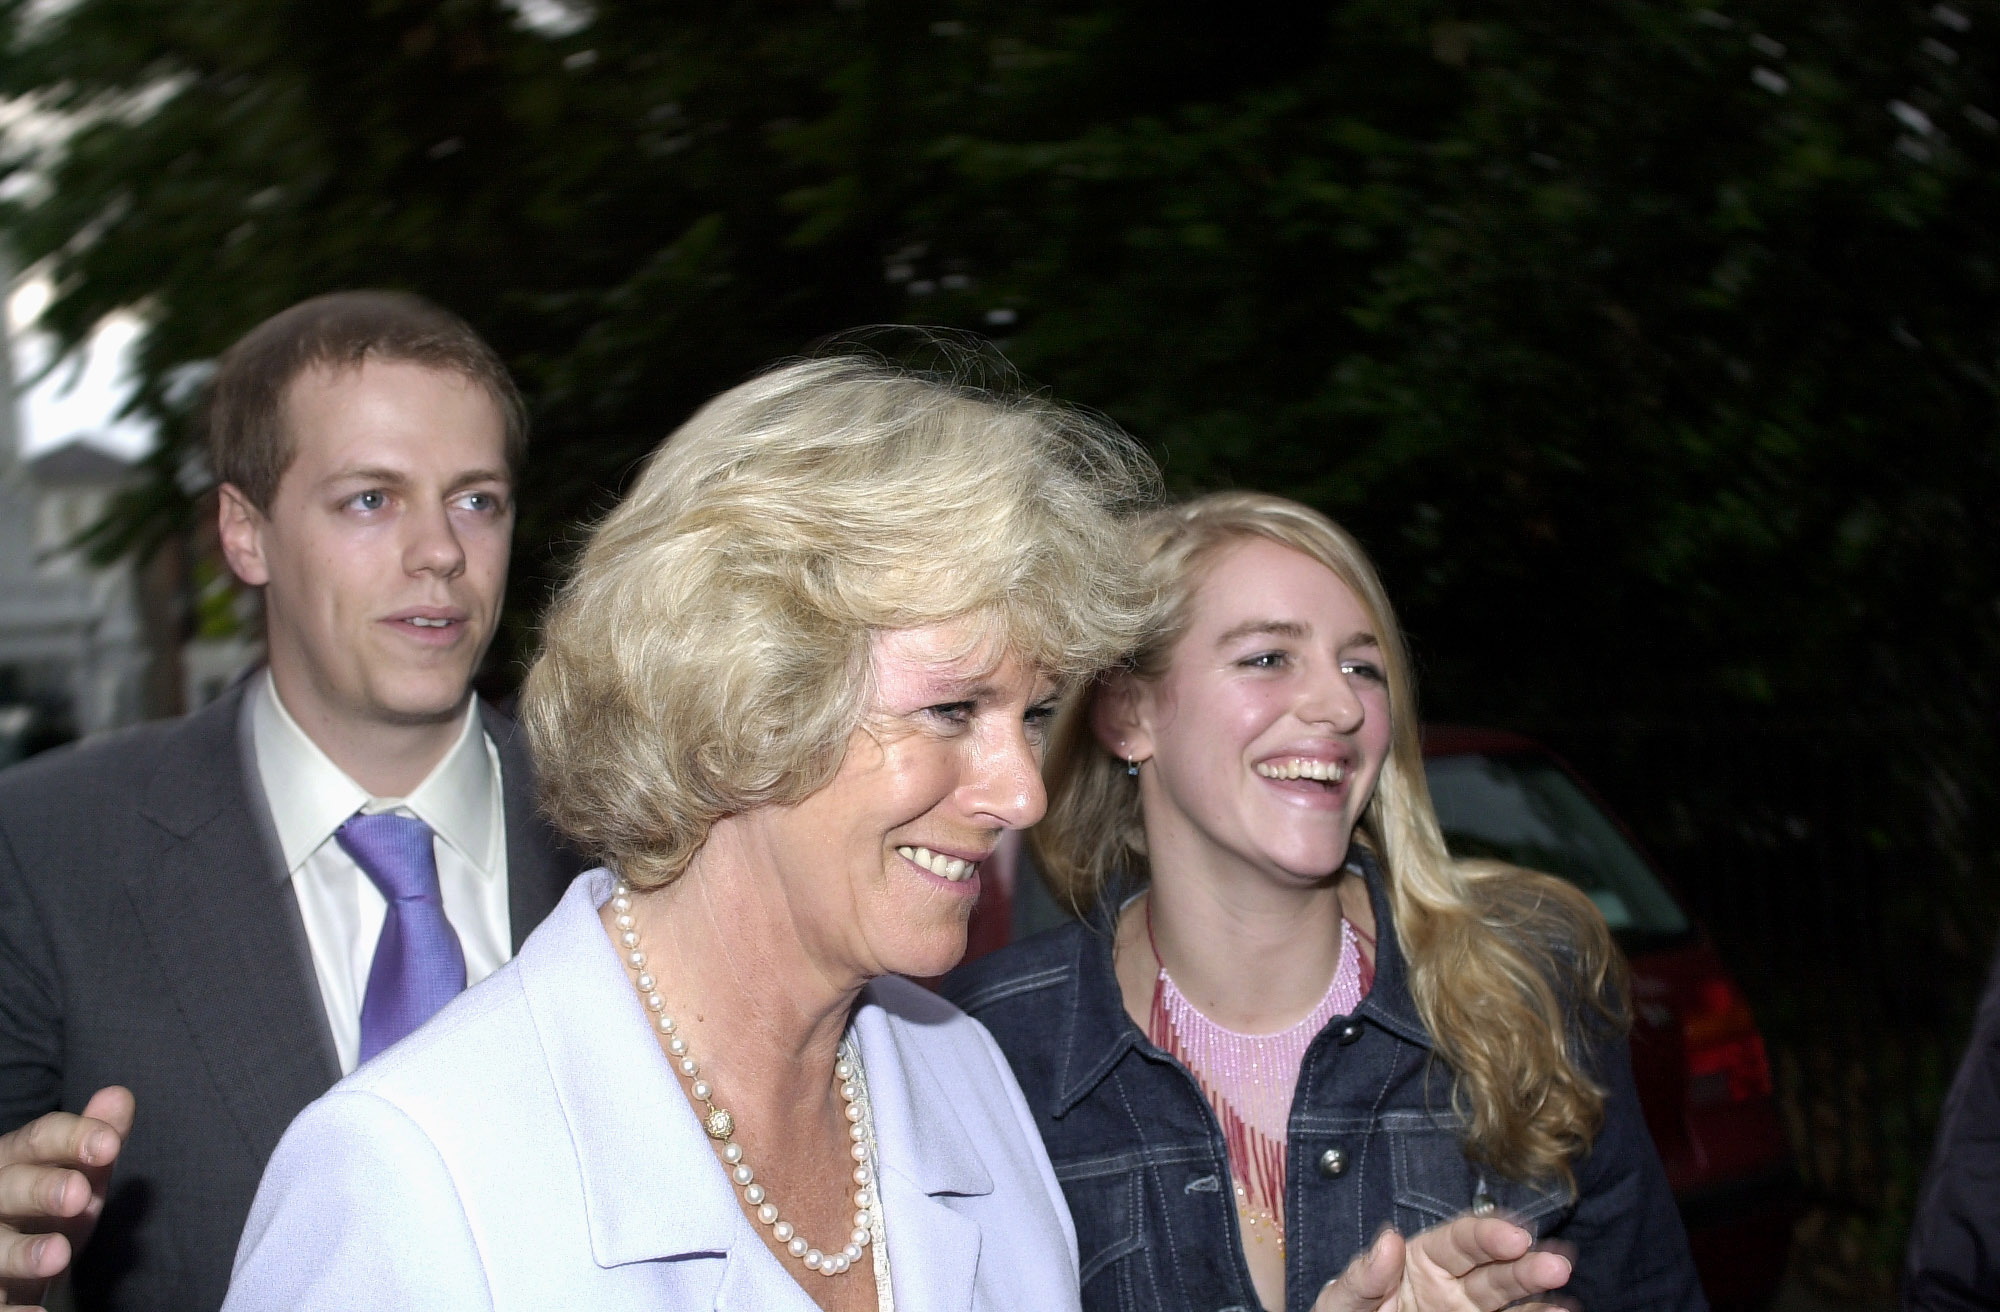 Königin Camilla und ihre Kinder, Tom Parker Bowles und Laura Lopes, in London am 5. Juli 2000. | Quelle: Getty Images